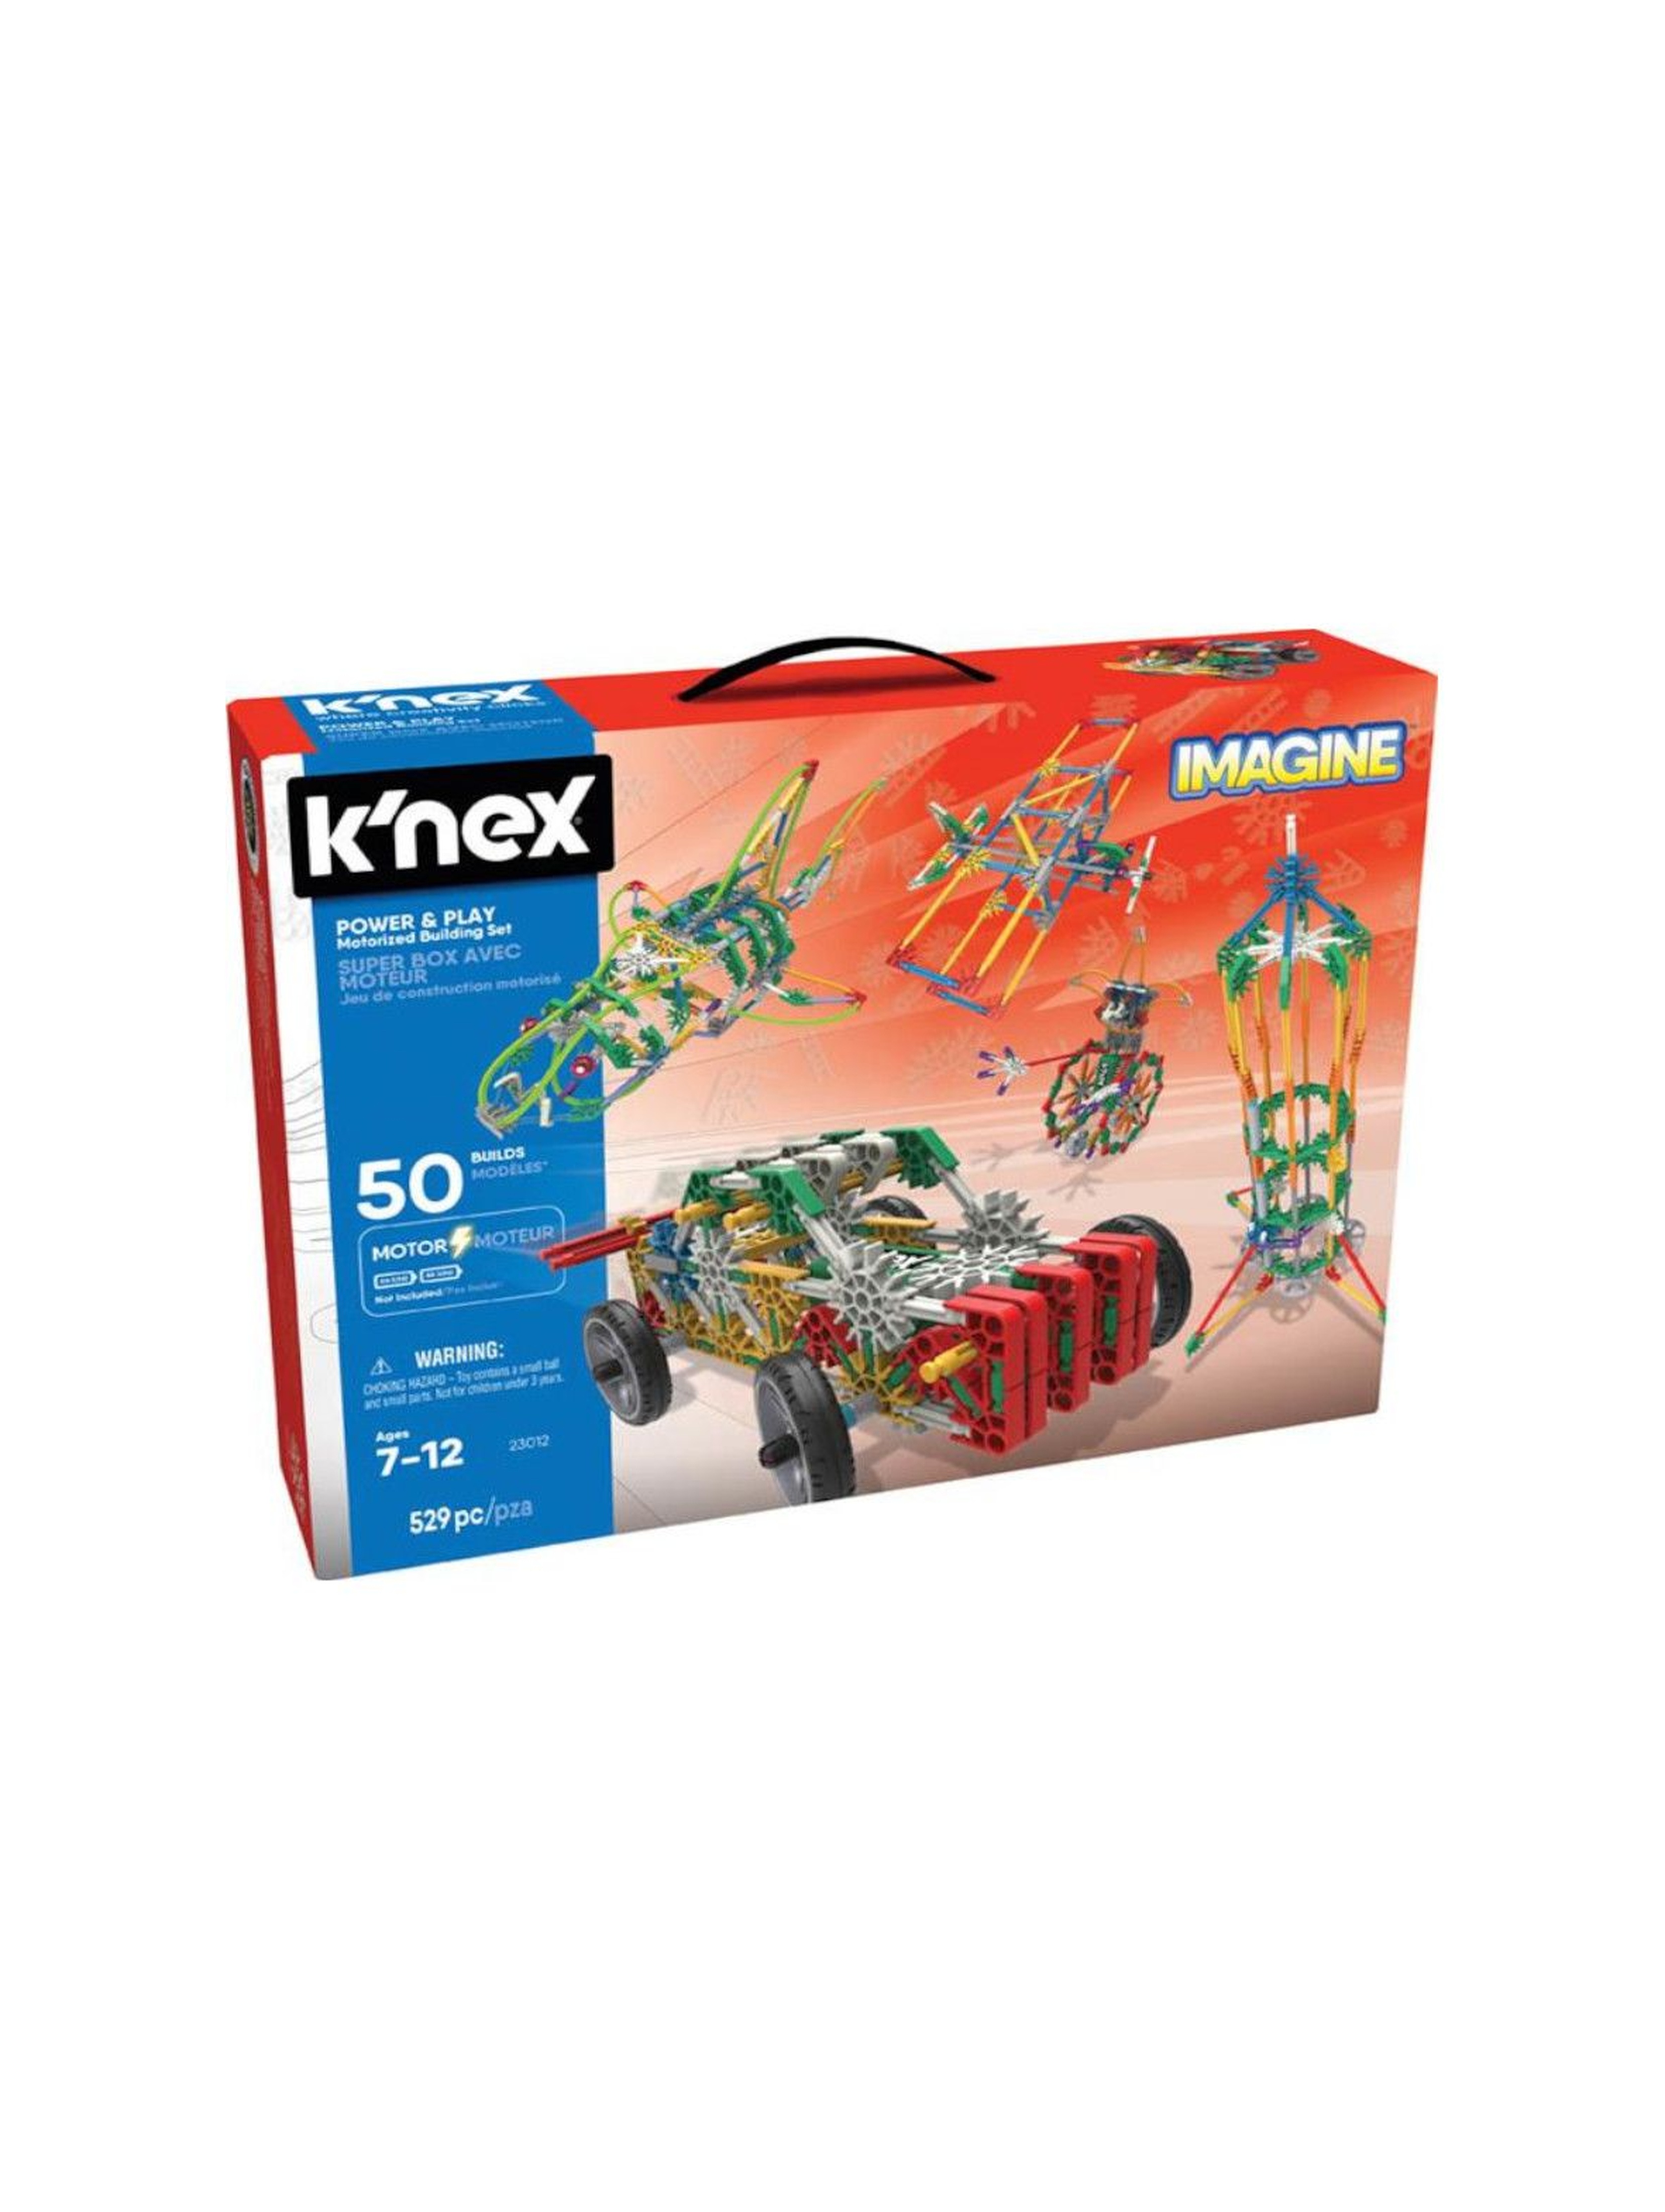 K'Nex Imagine Power & Play 50 modeli - zestaw konstrukcyjny 529el wiej 7+